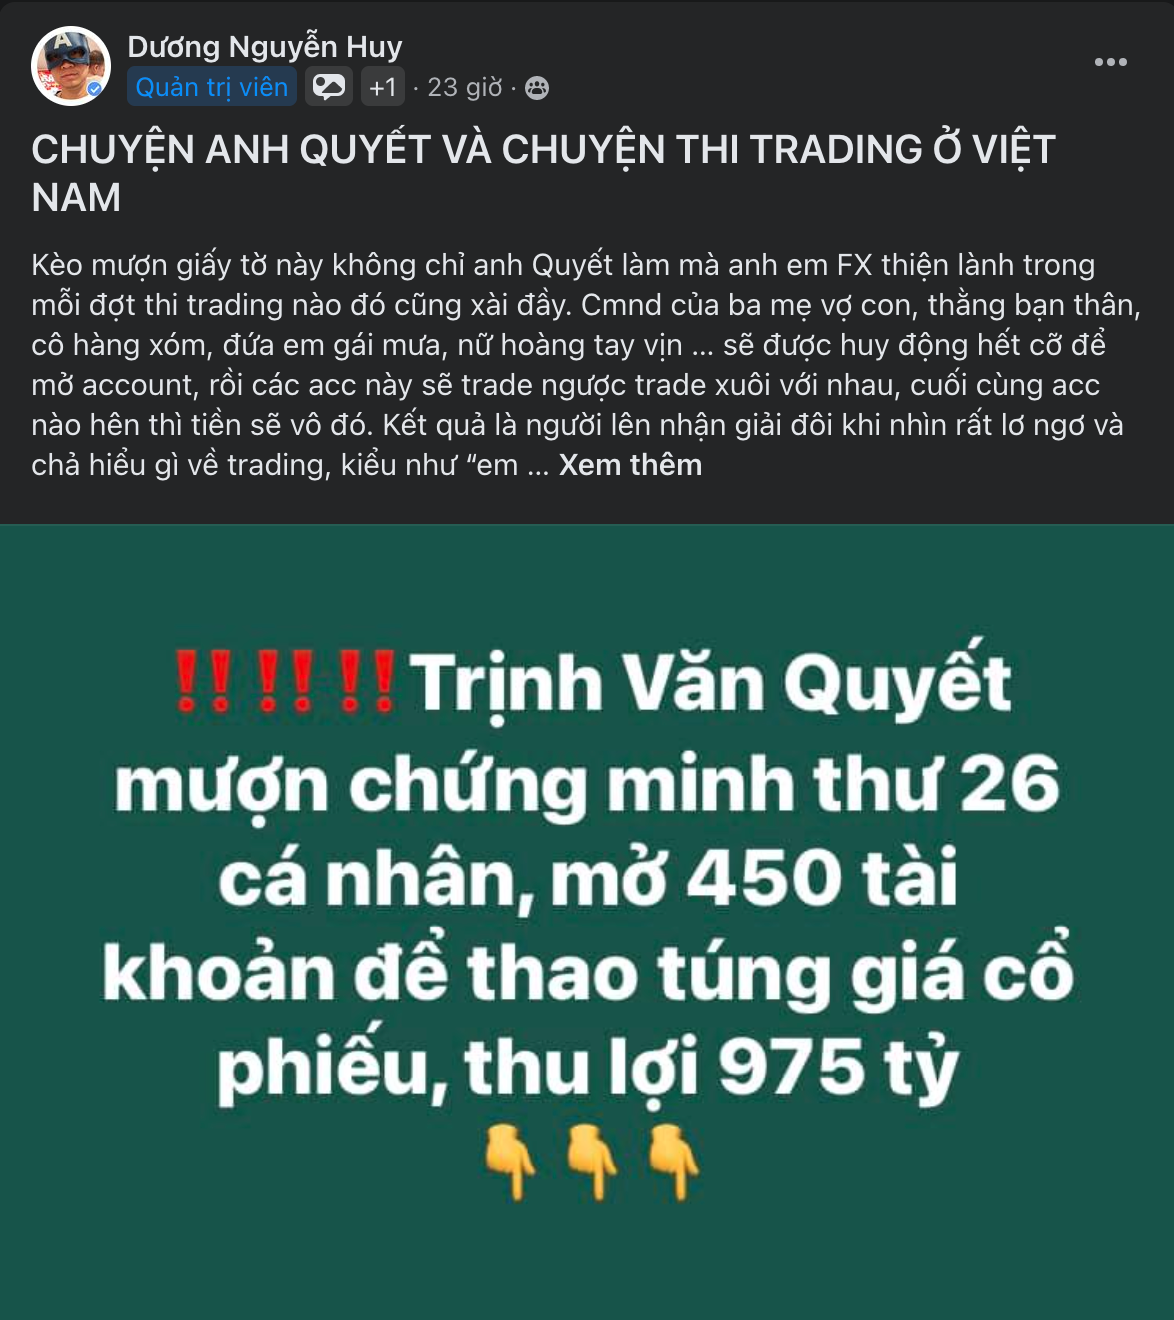 Diem-nong-MXH-ngay-06-06-Cong-dong-Trader-Viet-Nam-TraderViet3.png